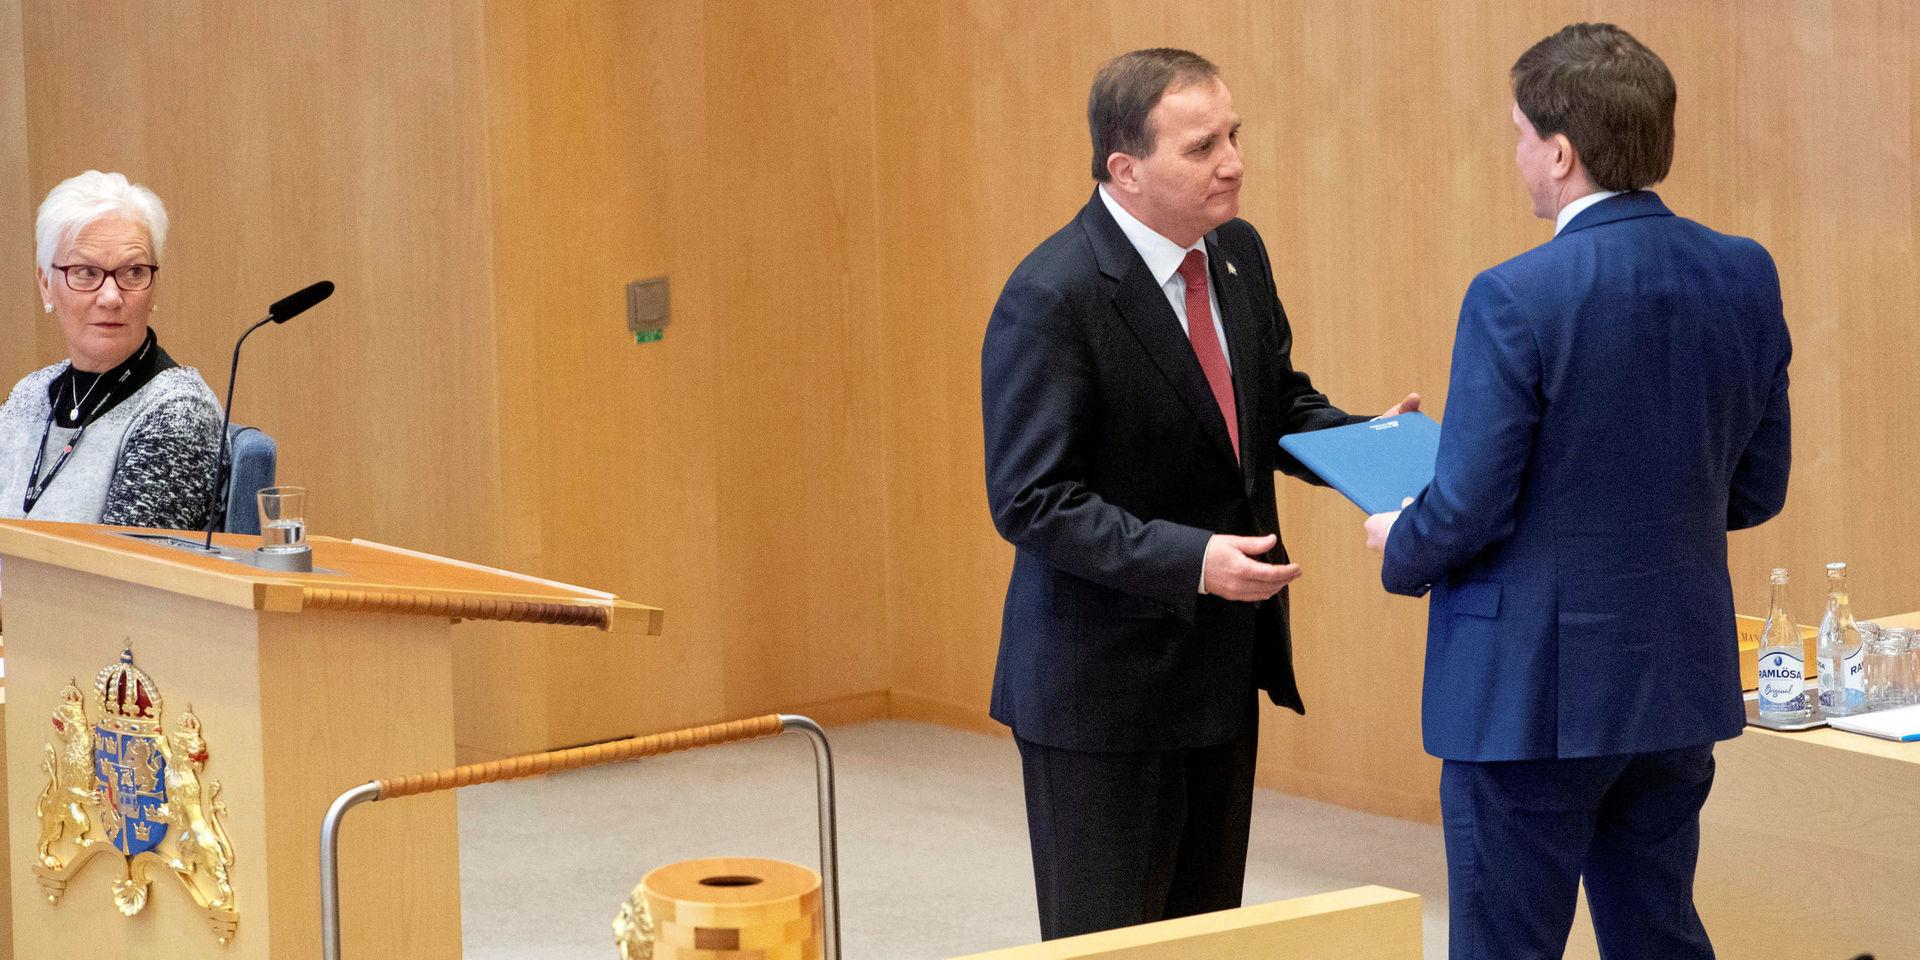 STOCKHOLM 20190118
Statsminister Stefan Löfven (S) tar emot statsministerförordnadet av riksdagens talman Andreas Norlén r statsministeromröstning i riksdagen.
Foto: Jessica Gow / TT kod 10070